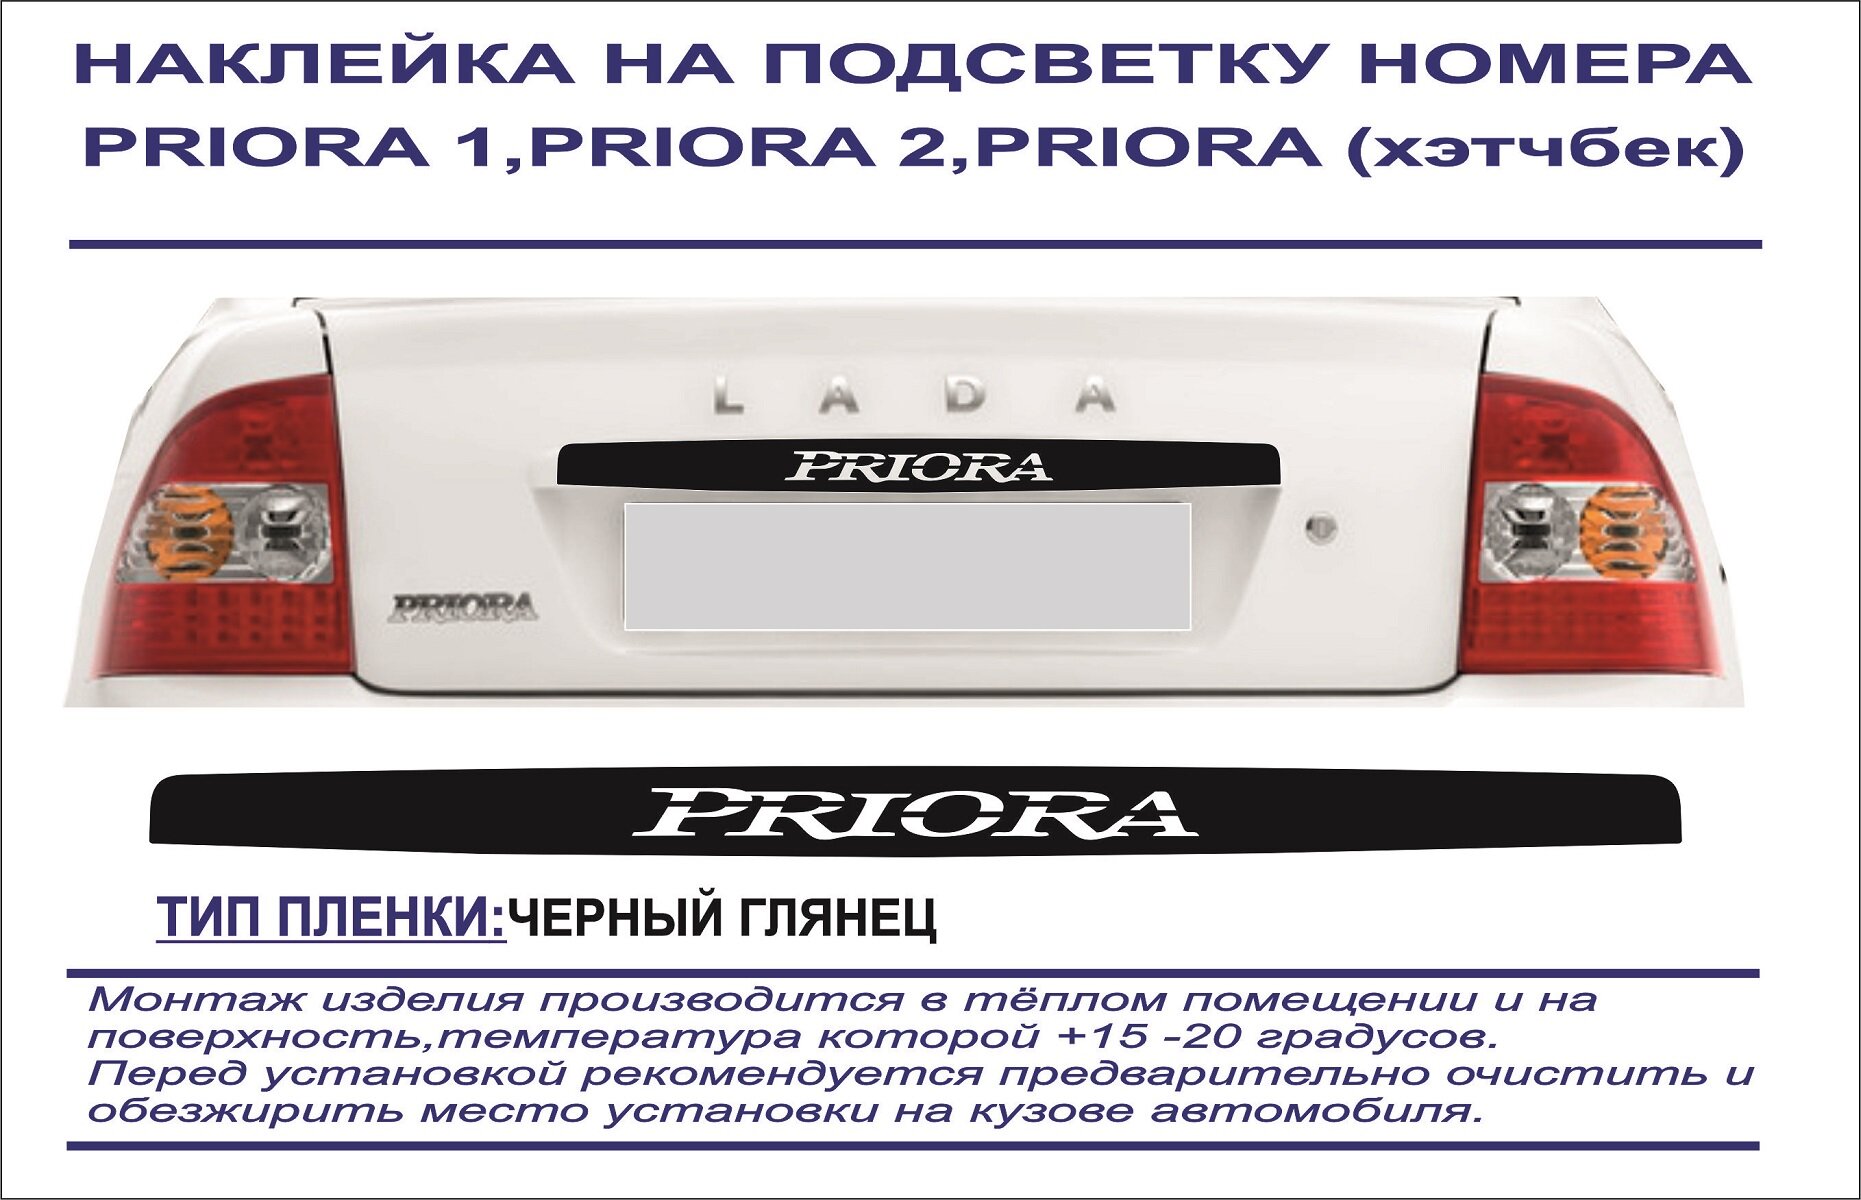 Наклейка-тюнинг на подсветку номера Lada PRIORA 1 2 седан хэтчбек (черный глянец) логотип вырезан на пленке